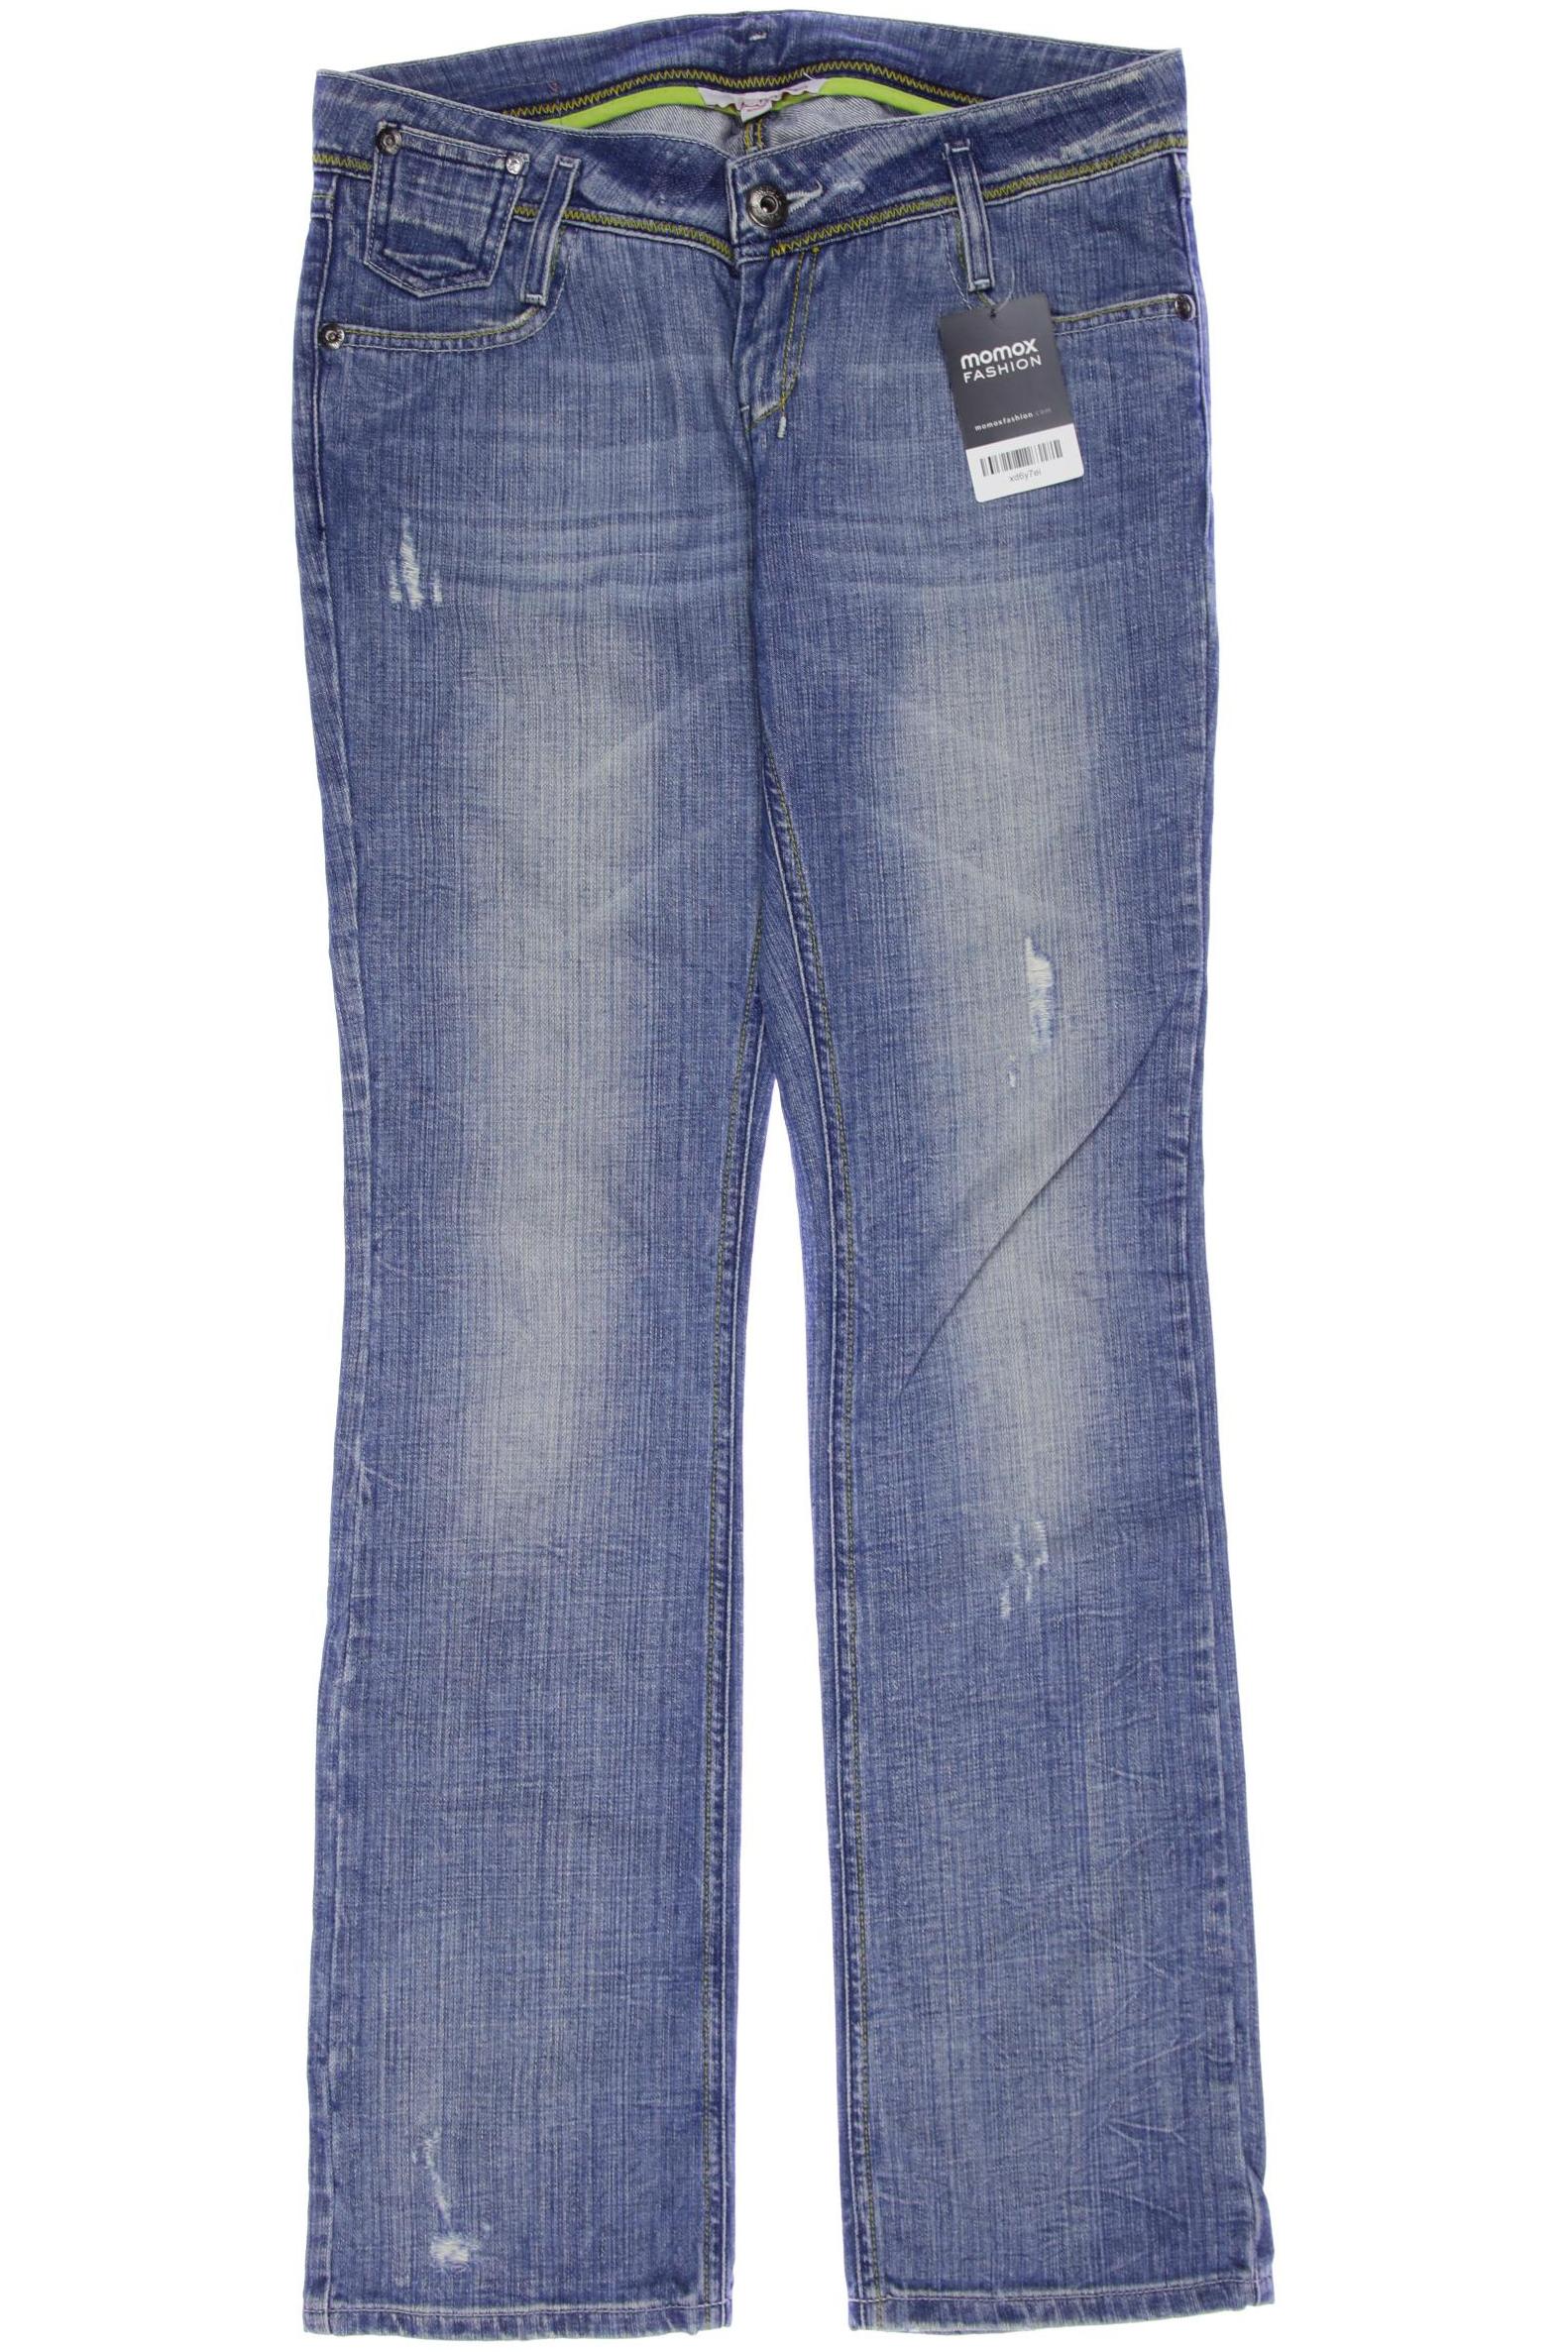 Tally Weijl Damen Jeans, blau, Gr. 38 von Tally Weijl